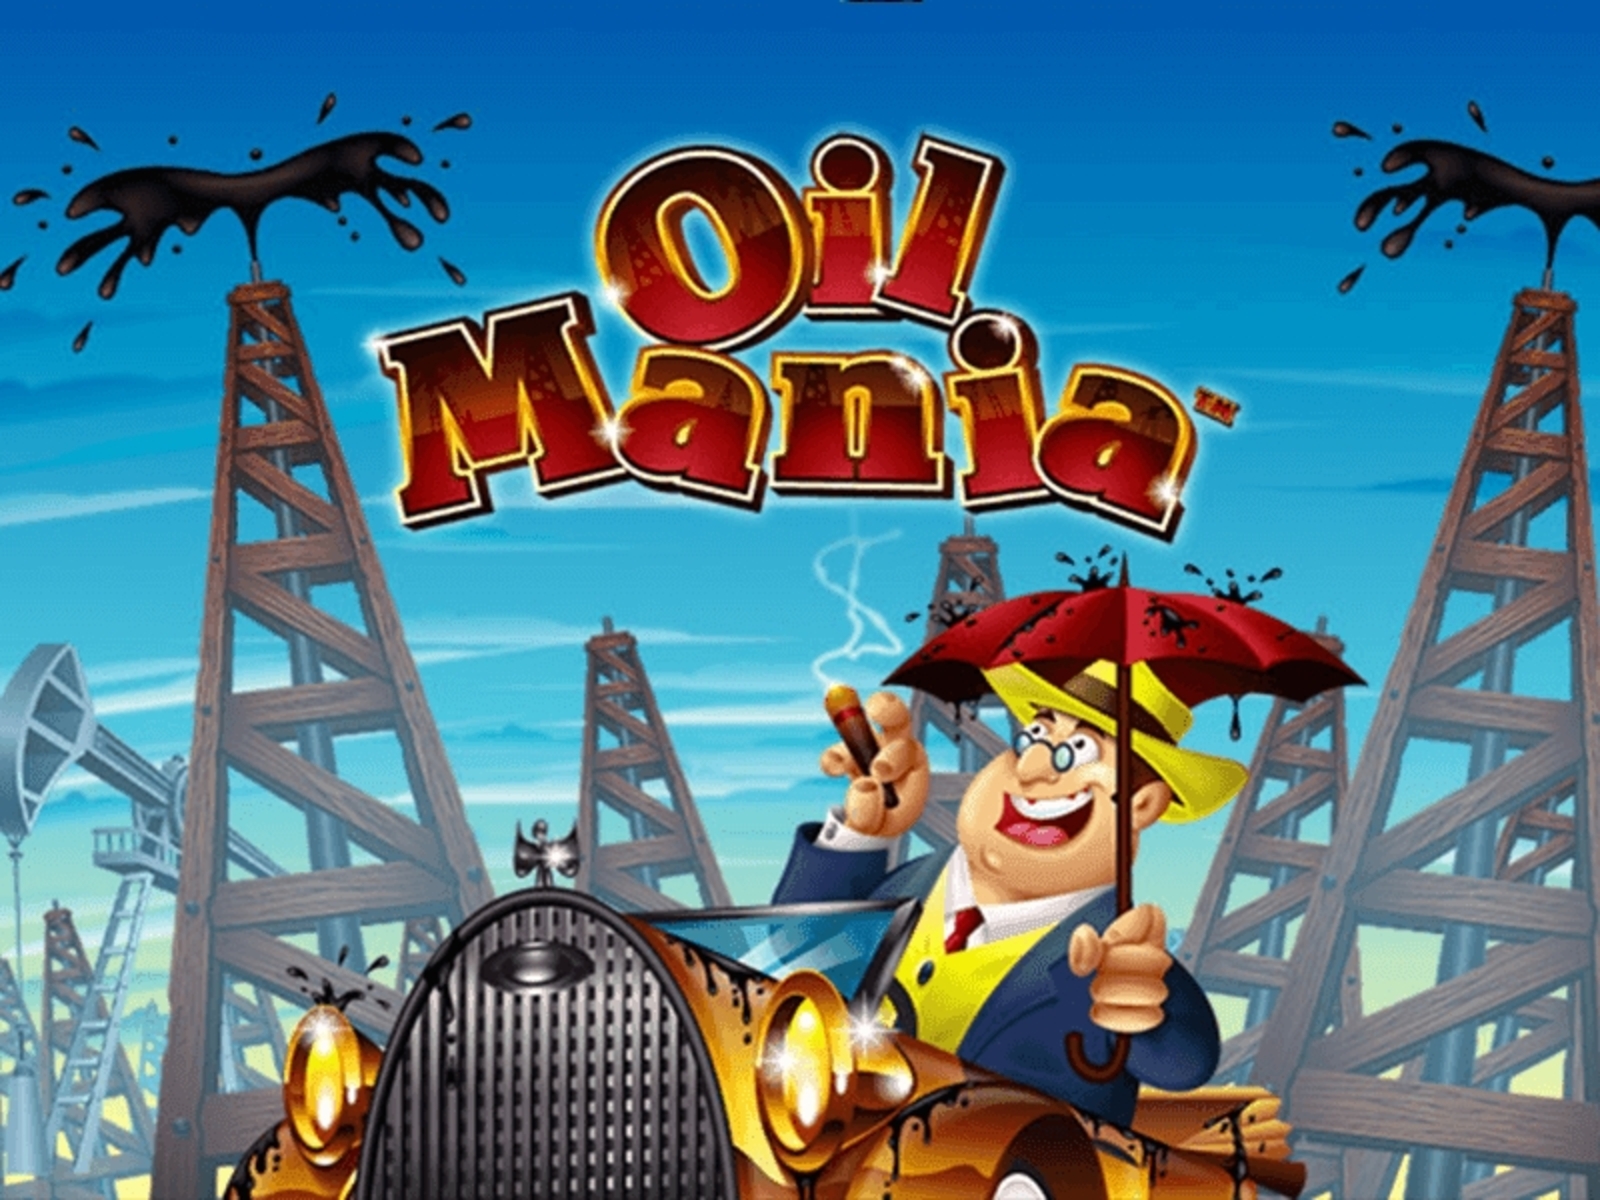 Oil Mania demo